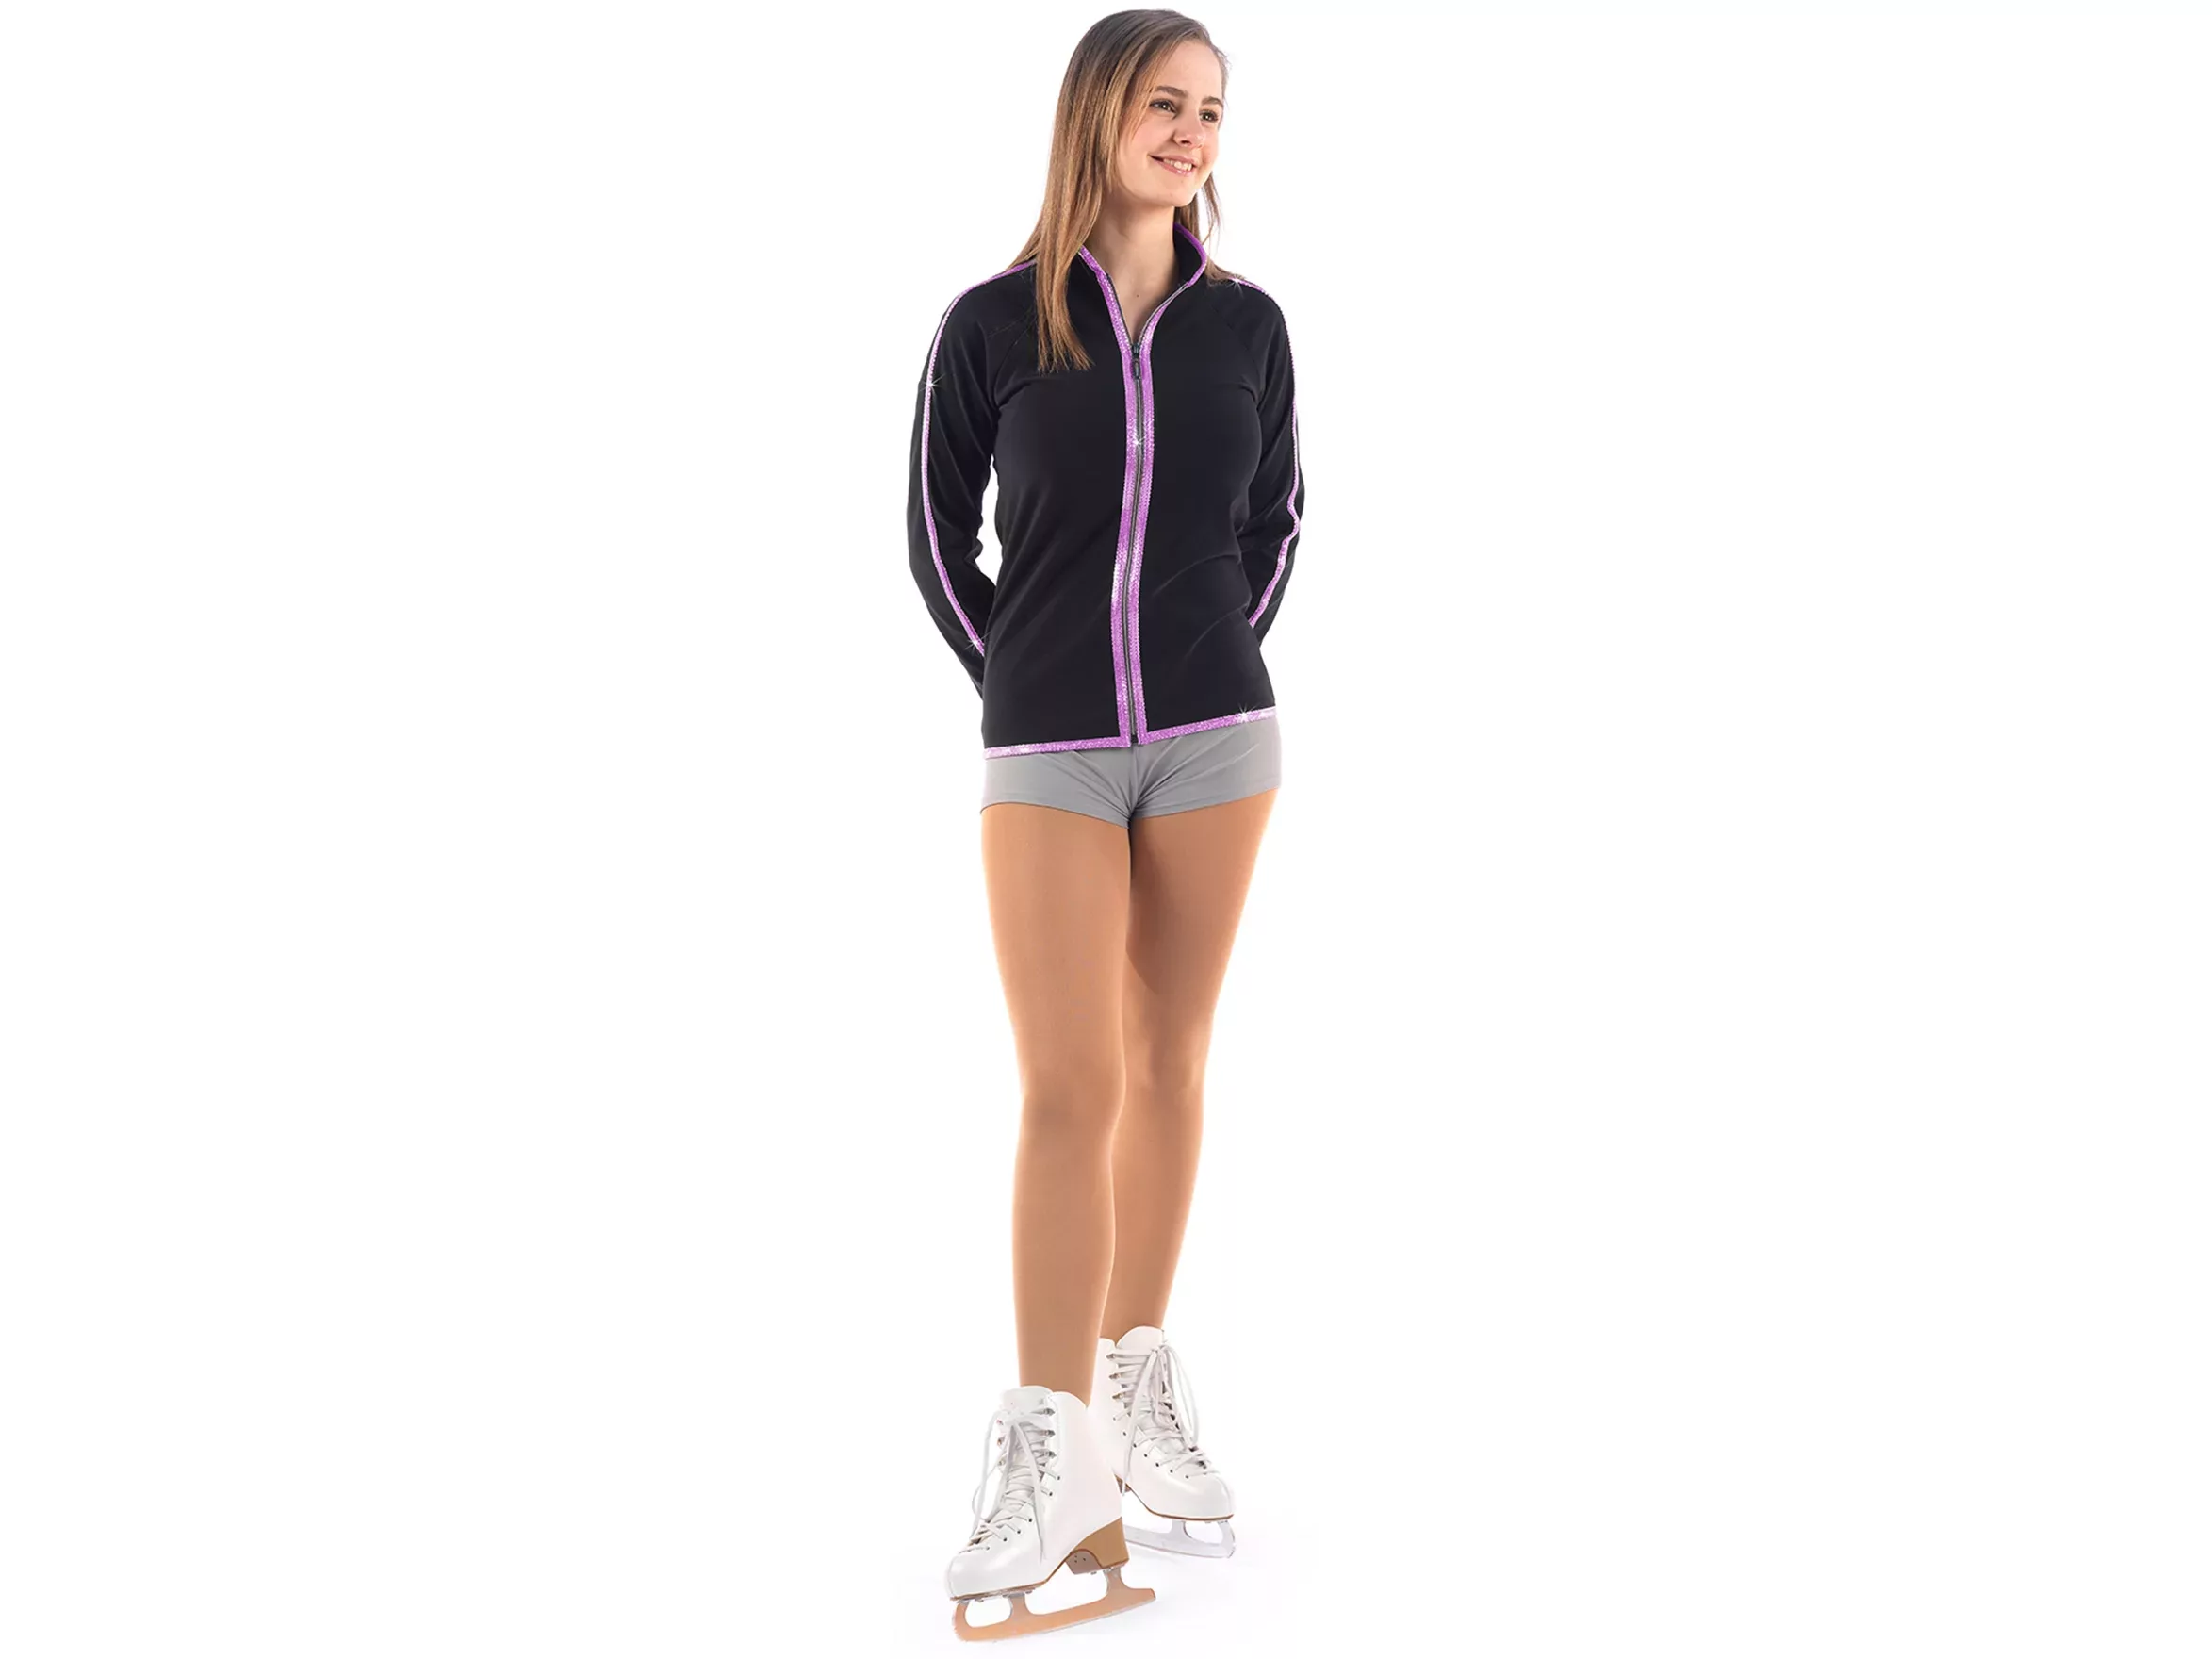 Veste de patinage artistique Sagester Style : 252, bords fuchsia Vestes pour femmes et filles